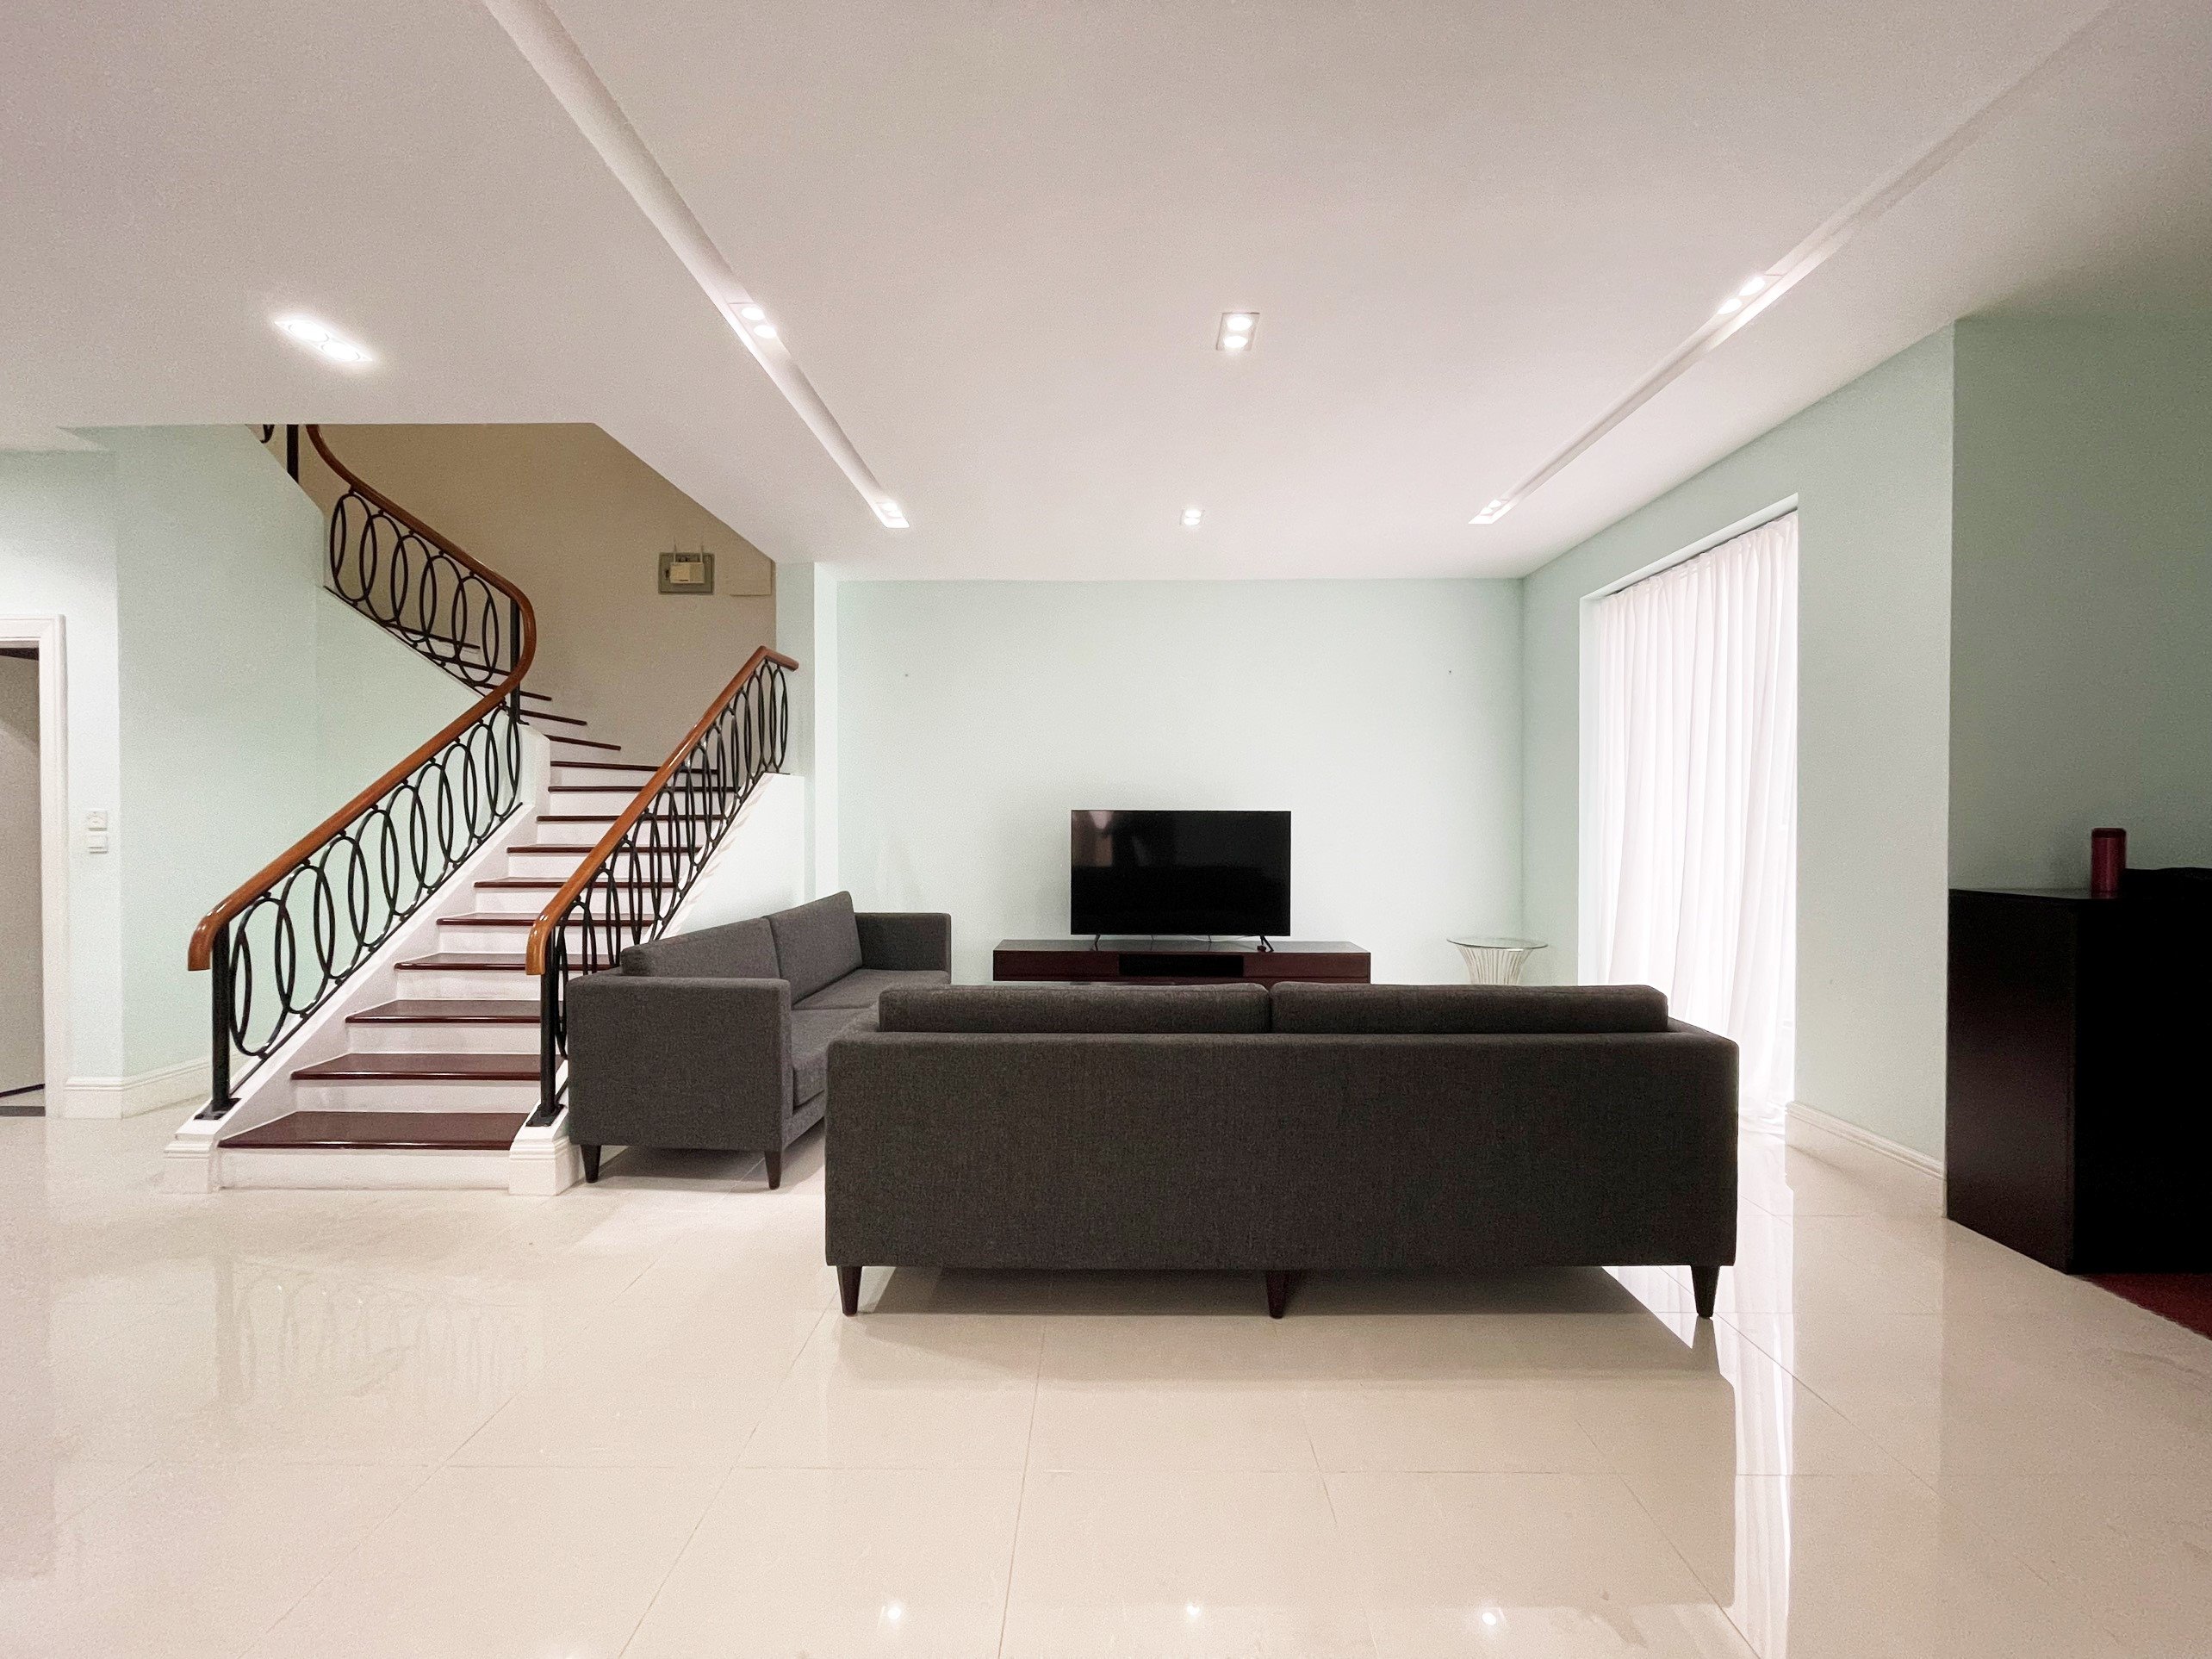 4 bedroom villa for rent in Hoa Sua block, Vinhomes Riverside, Long Bien district 3